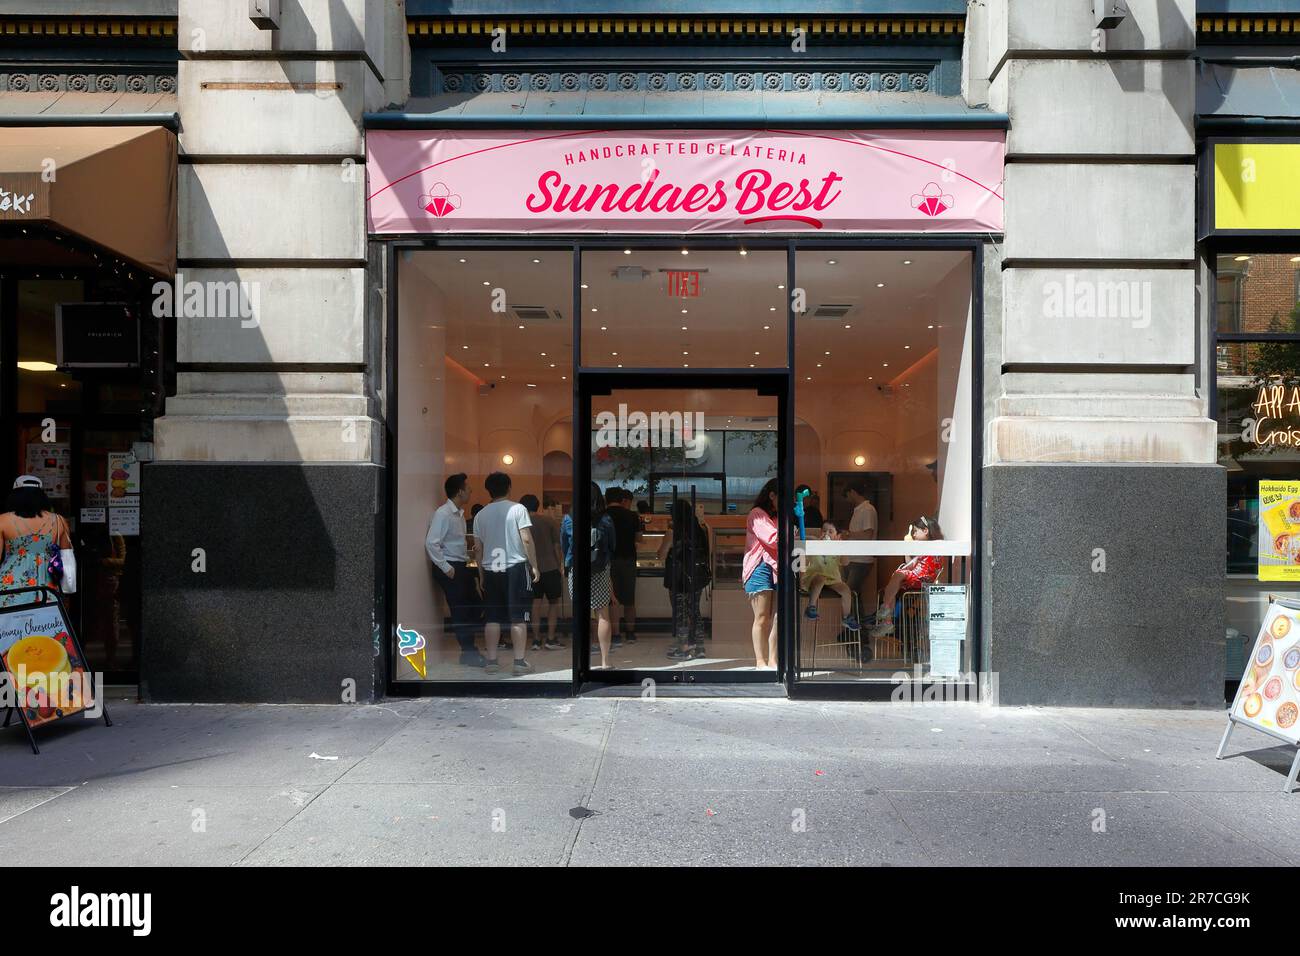 Sundaes Best, 315 5th Ave, New York, New York, magazzino di un gelateria con sapori asiatici nella Coreatown di Manhattan. Foto Stock